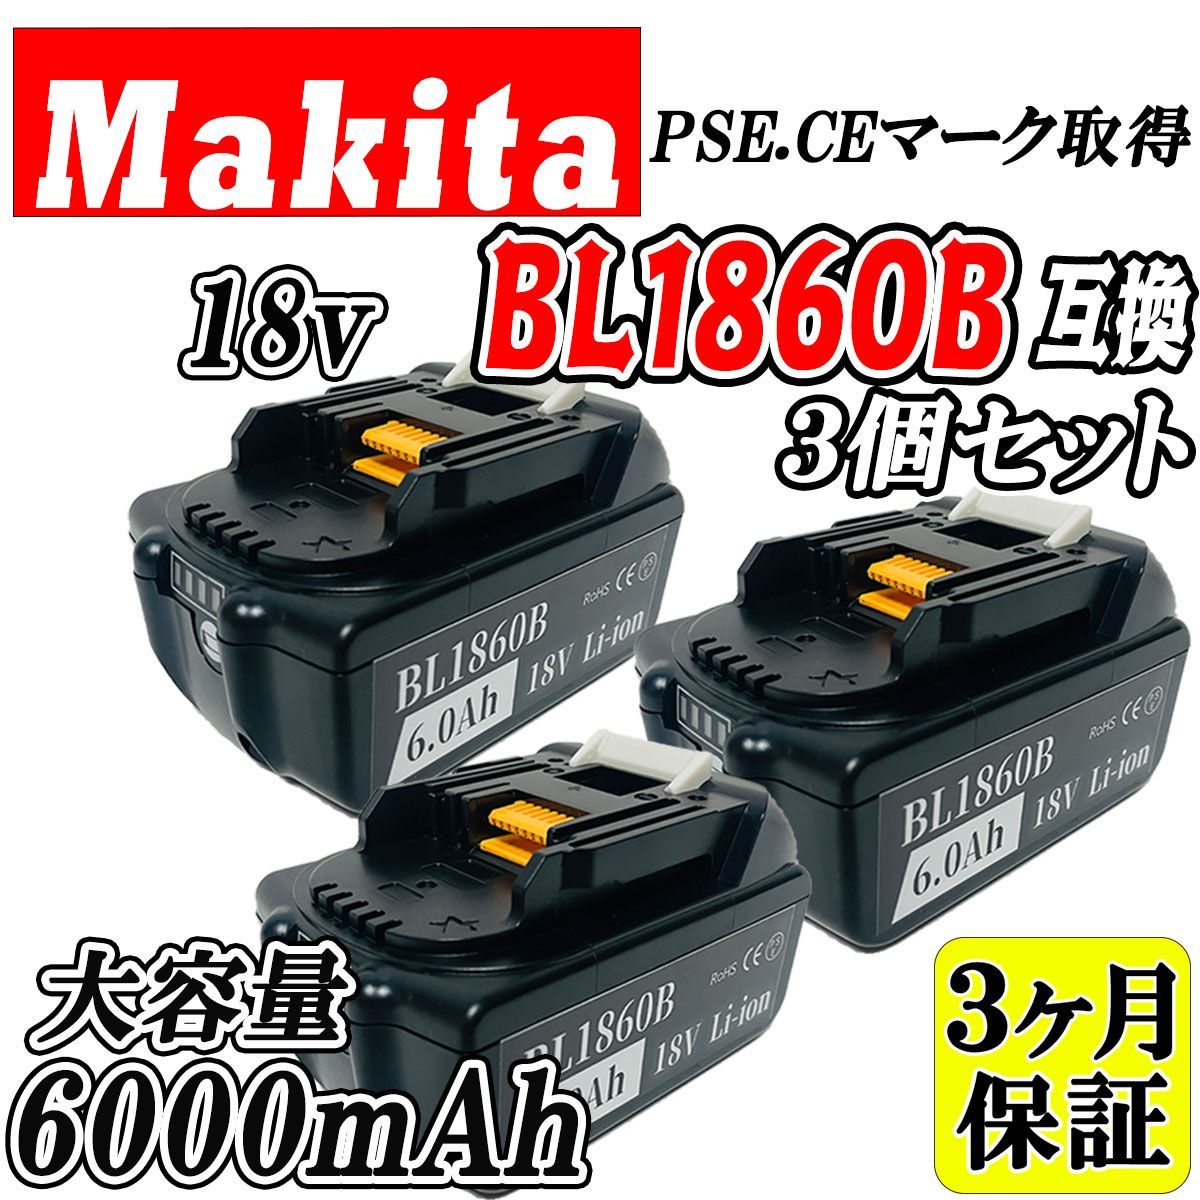 【3ヶ月保証】マキタ 18V BL1860B 3個セット 大容量 6.0Ah 互換 バッテリー makita 残量表示付き PSE取得済 【3個セット】